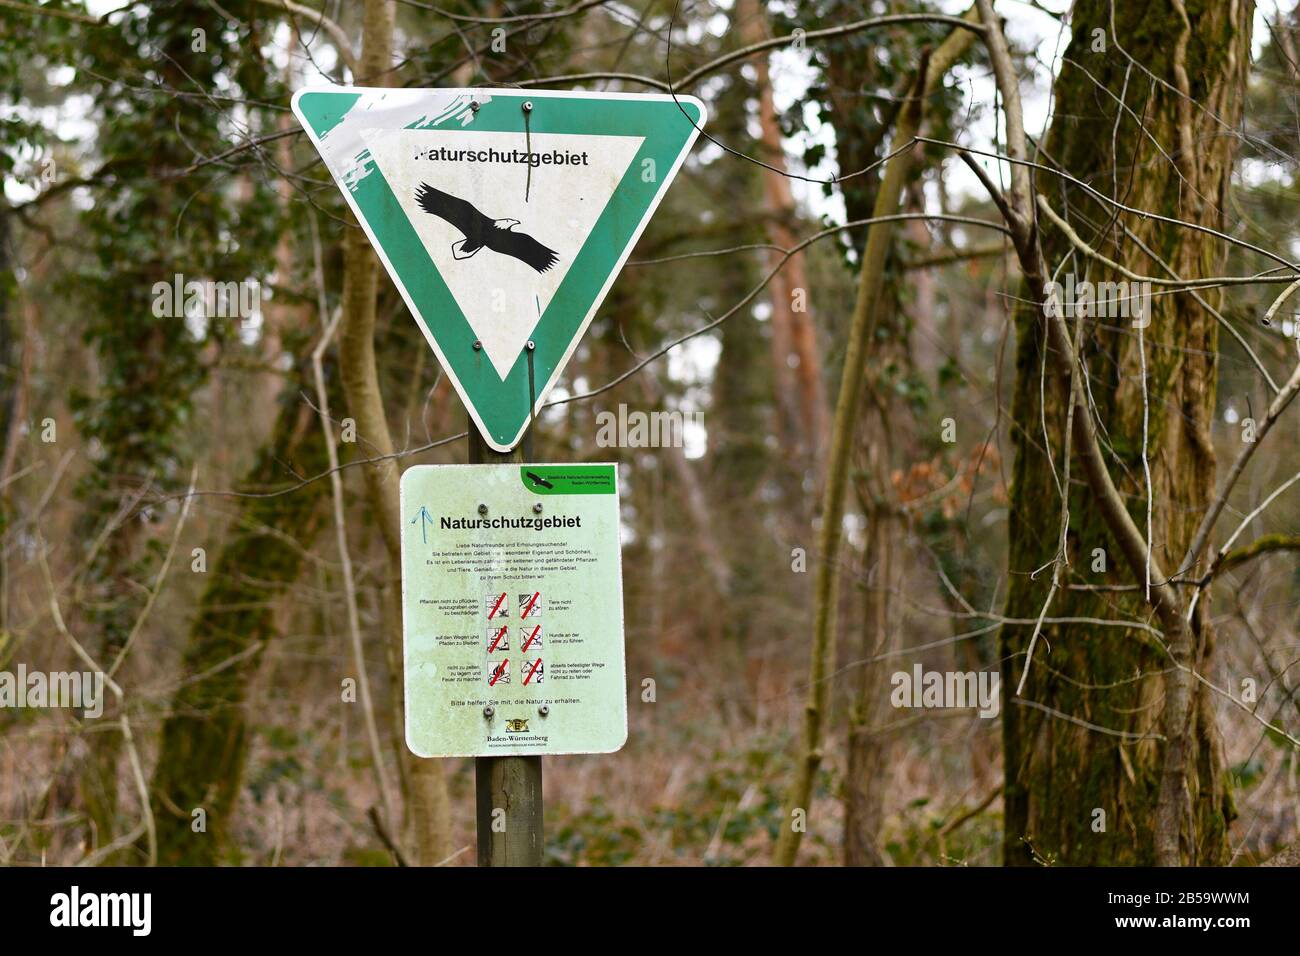 Signe vert triangulaire avec aigle et signe avec des règles de comportement pour La Réserve naturelle allemande, une catégorie de zone protégée en Allemagne Banque D'Images